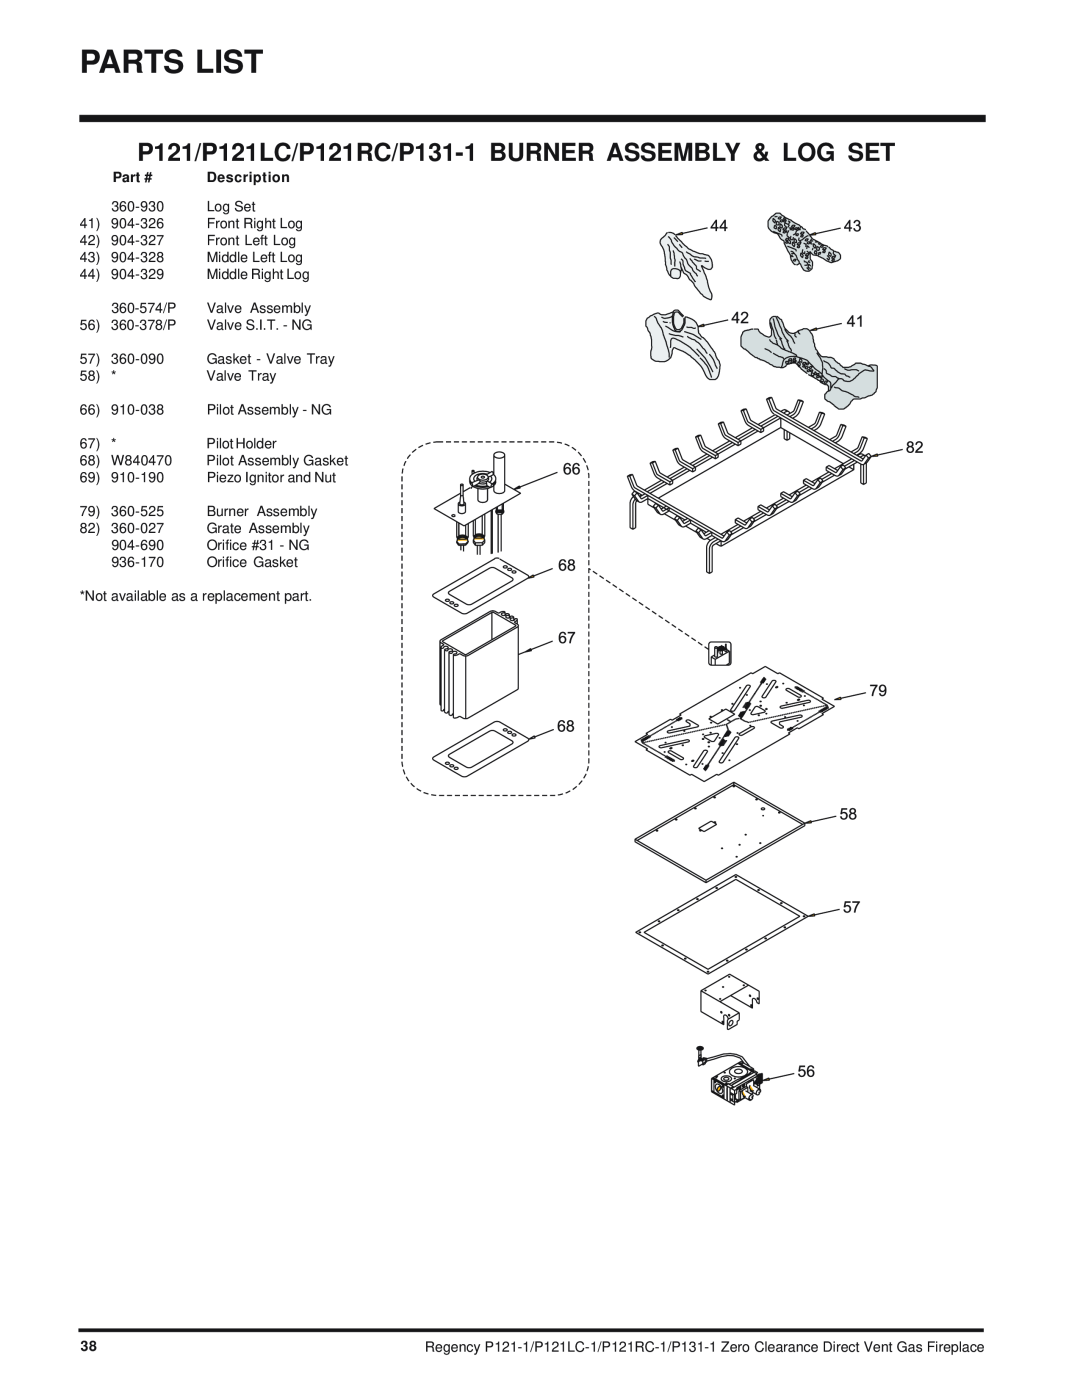 Regency P121LC, P121RC, P131 installation manual Parts List, Description 